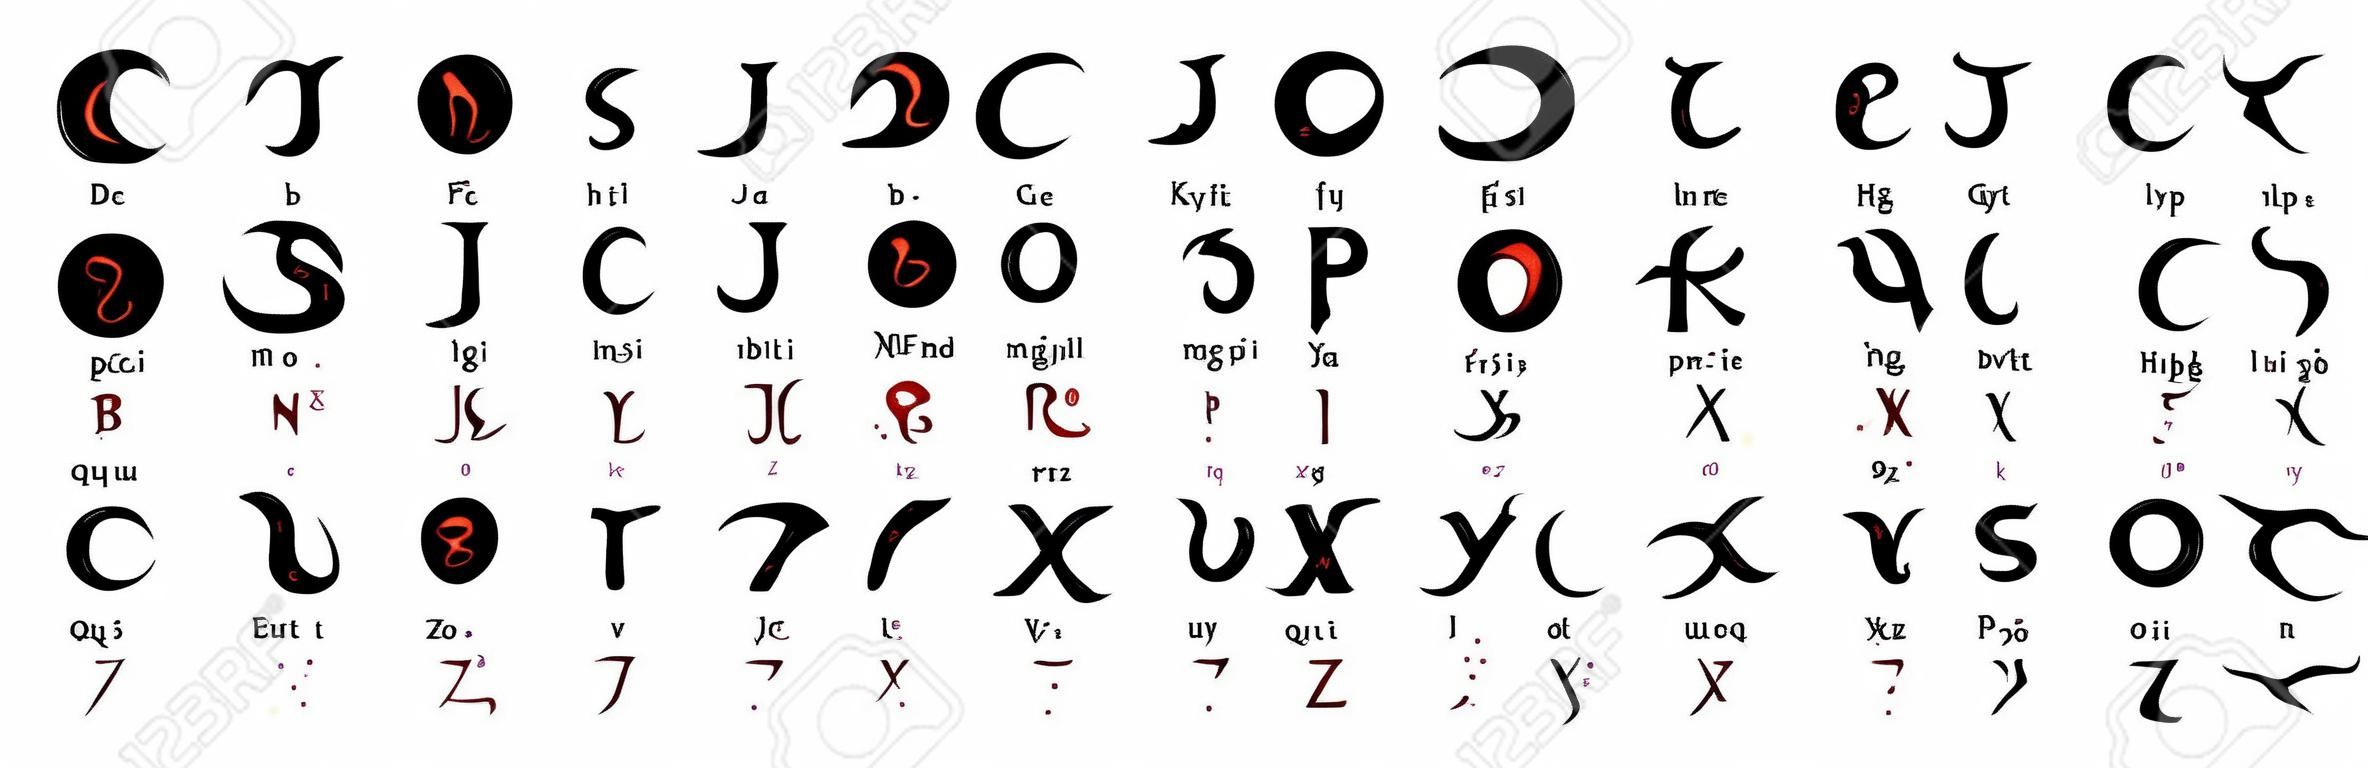 Ensemble d'alphabet magique enochian dessiné à la main